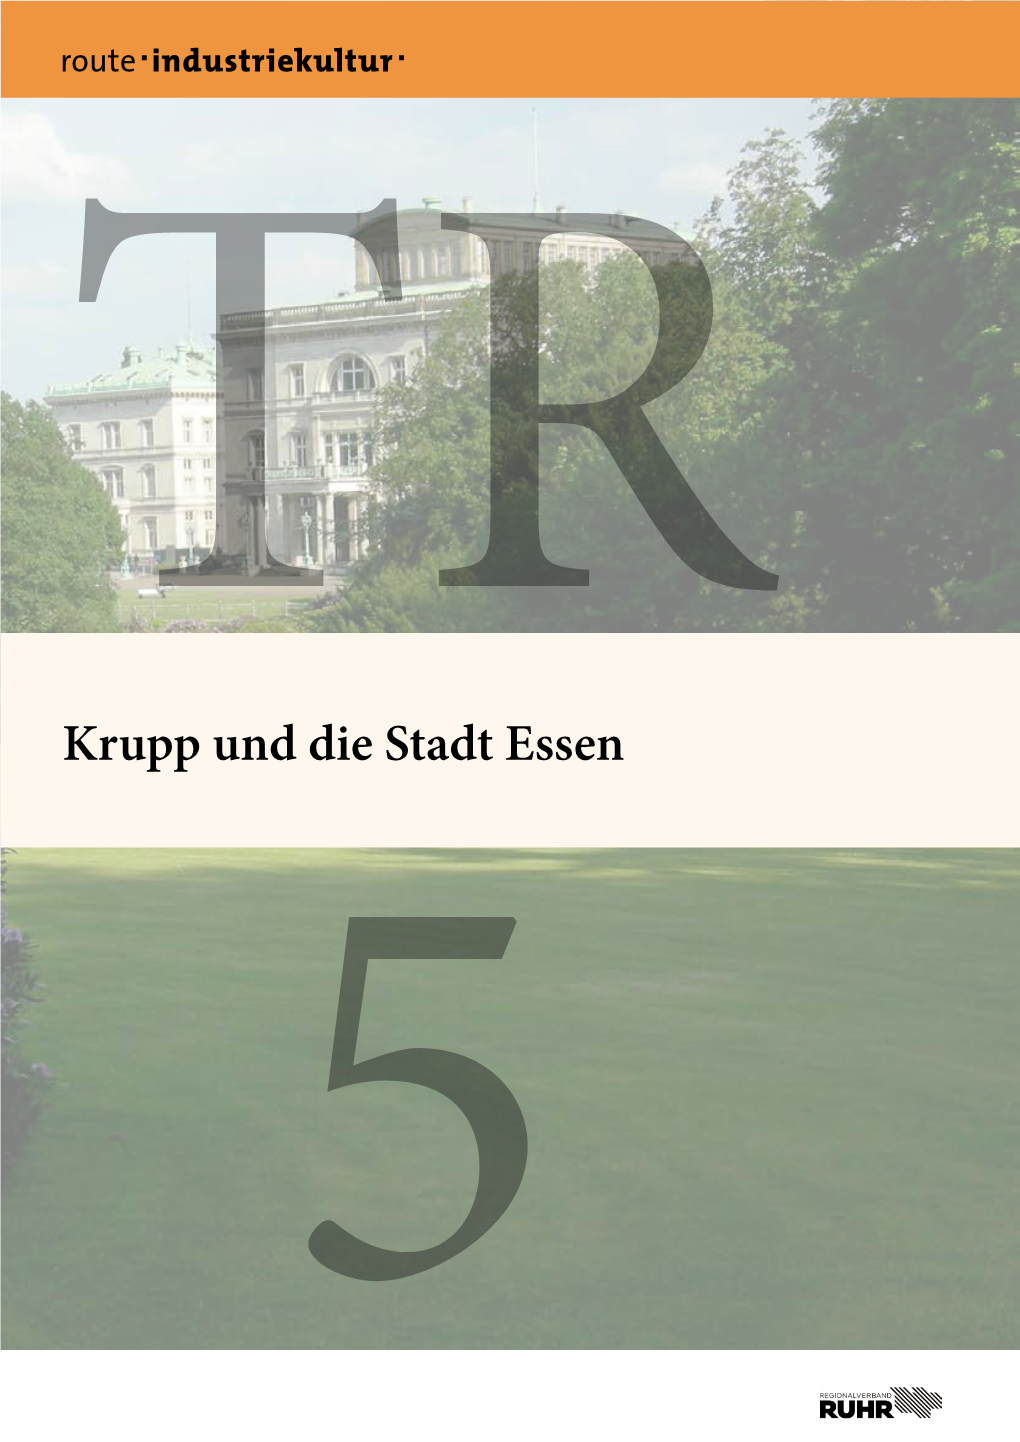 Krupp Und Die Stadt Essen TR 5, 2019